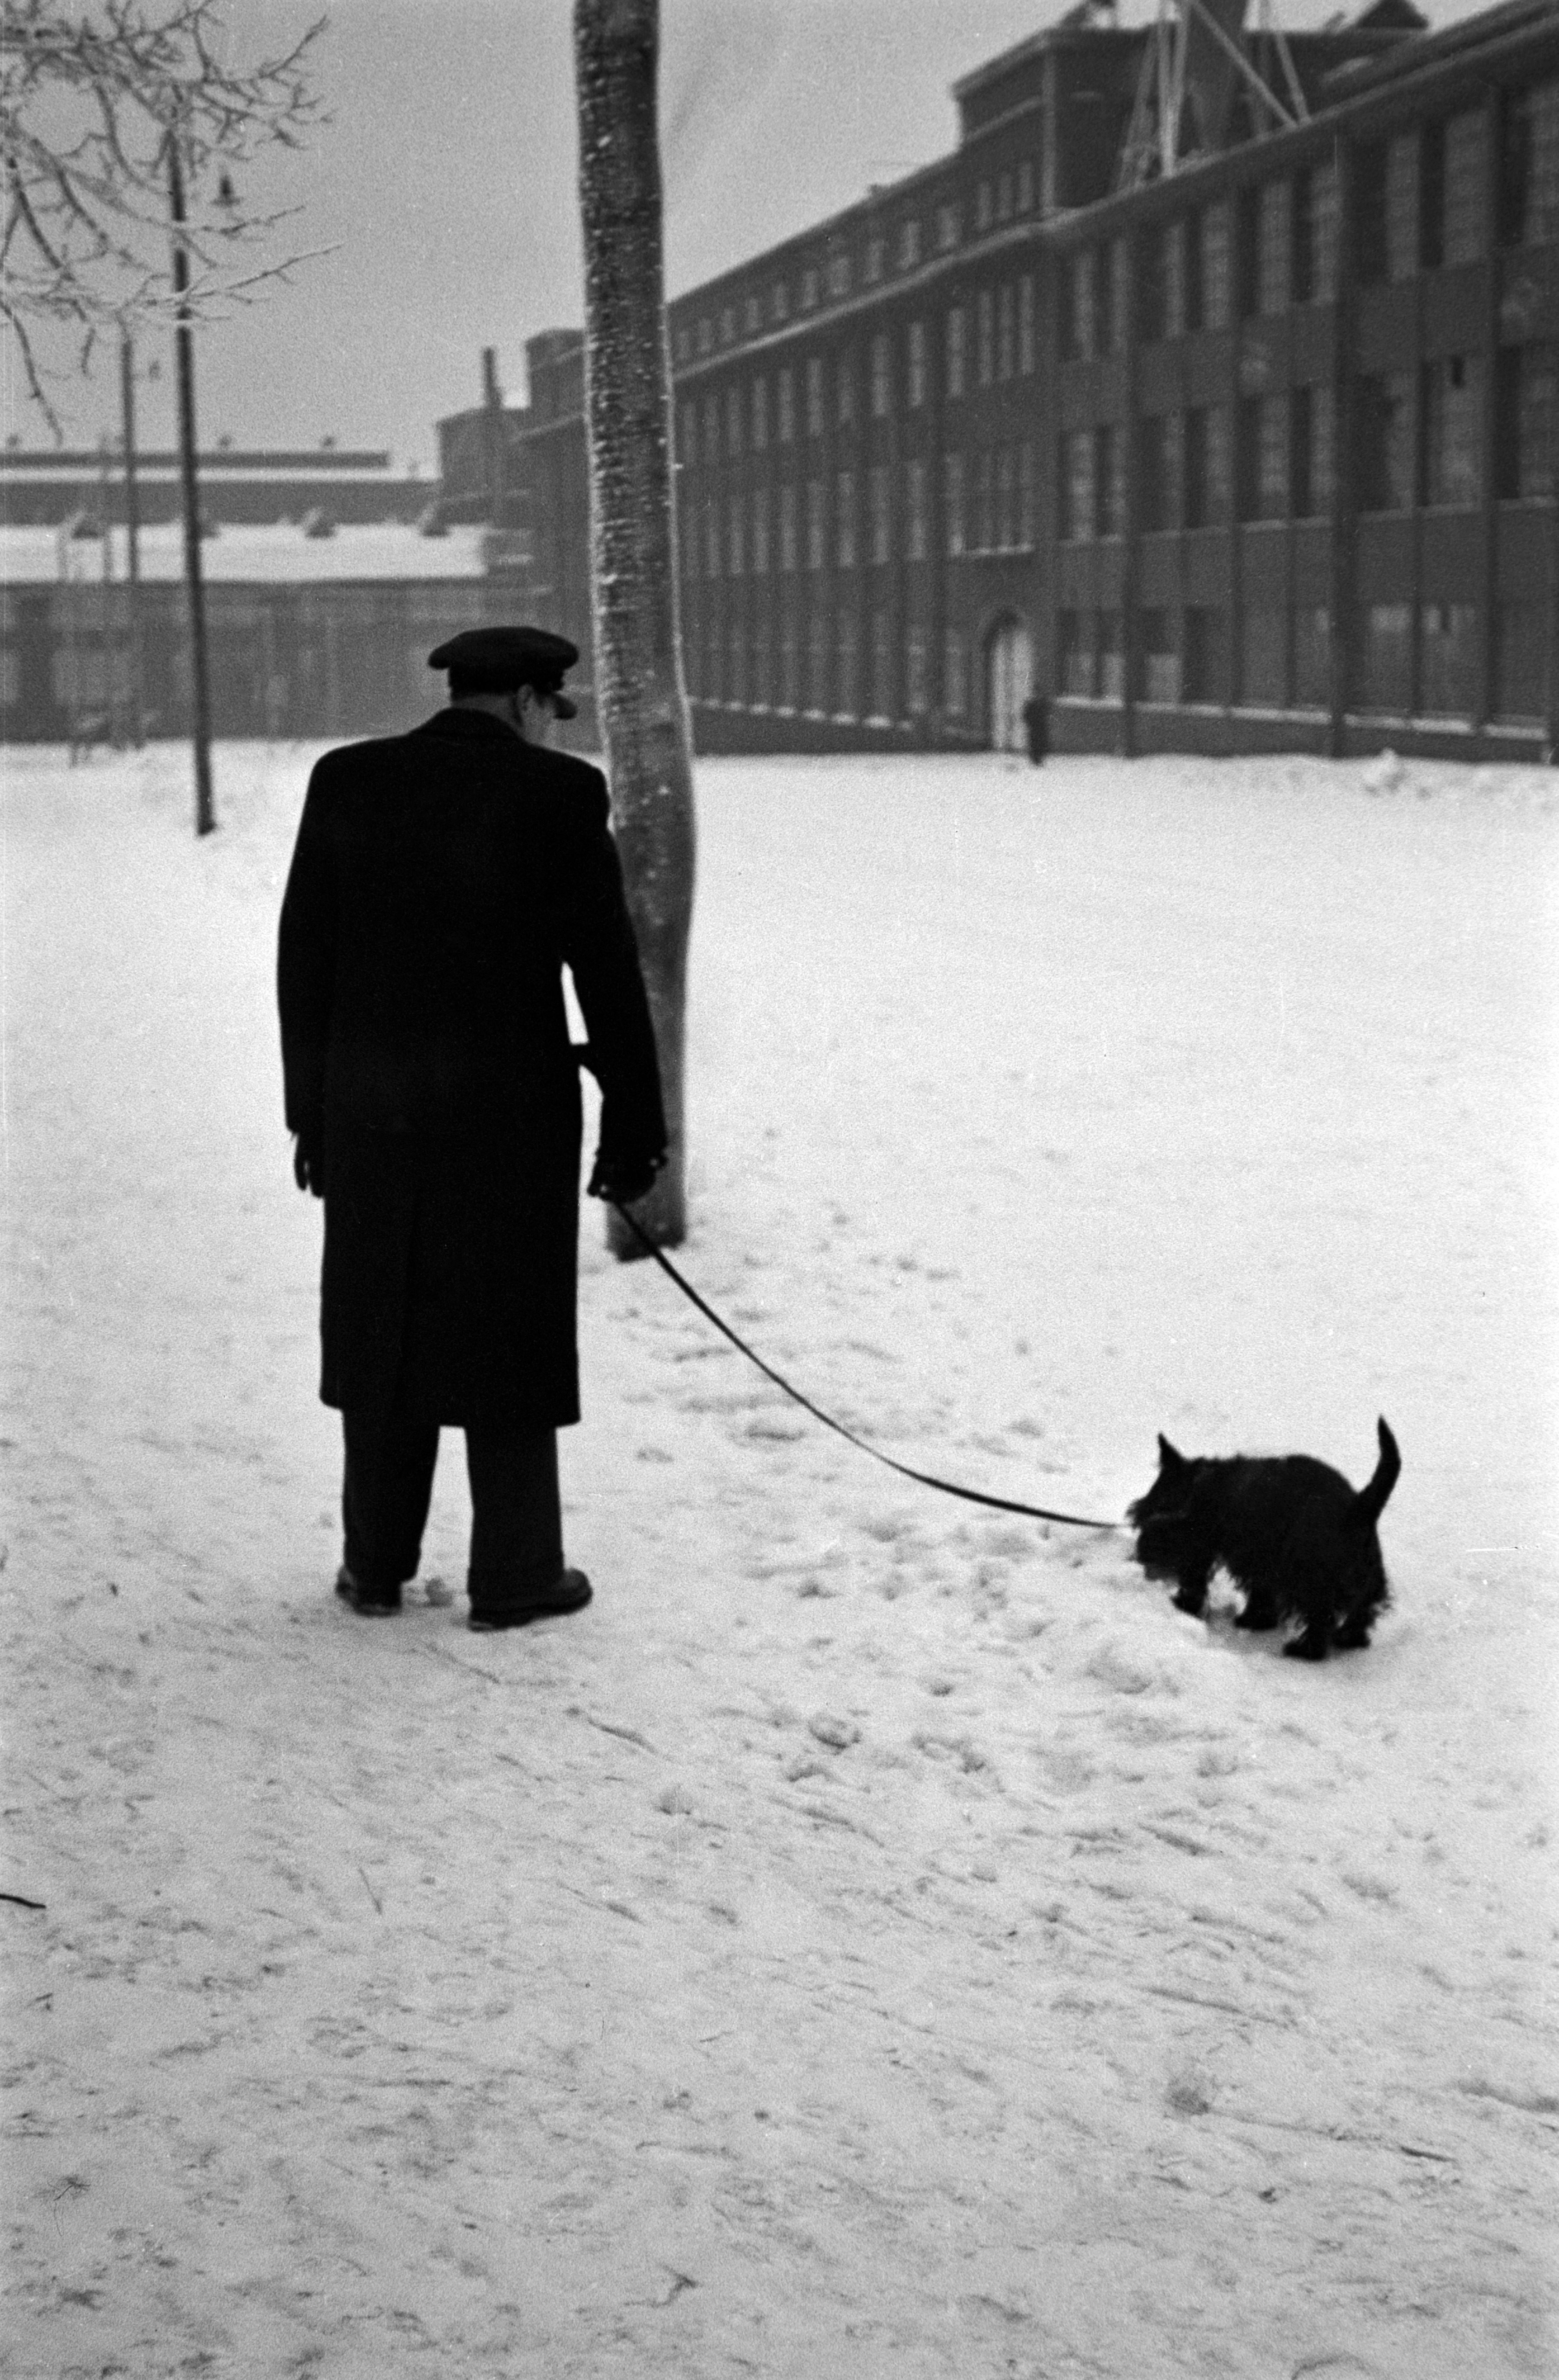 Mies ulkoiluttamassa koiraa talvella Haapaniemenkatu 5:n kohdalla.